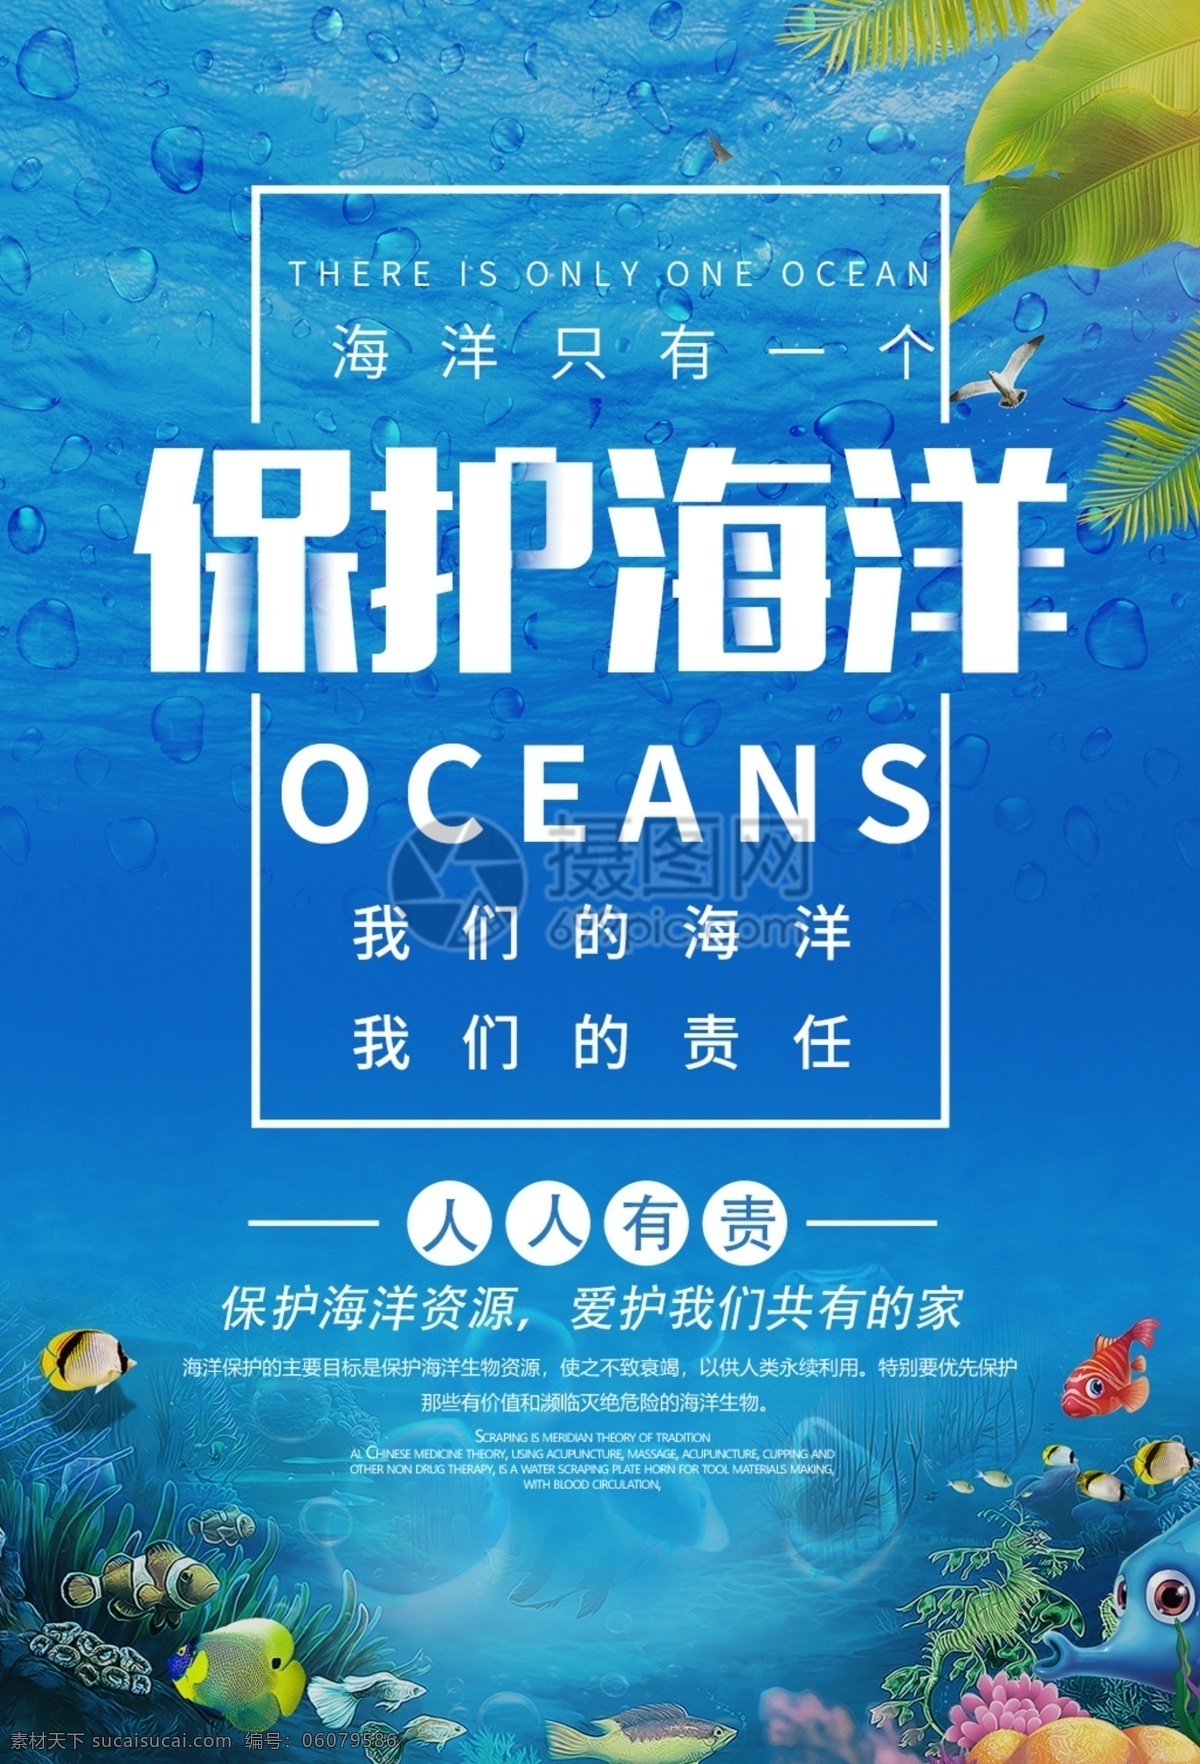 保护 海洋 公益 宣传海报 蓝色 保护海洋 大海 海洋日 海洋动物 公益海报 保护环境